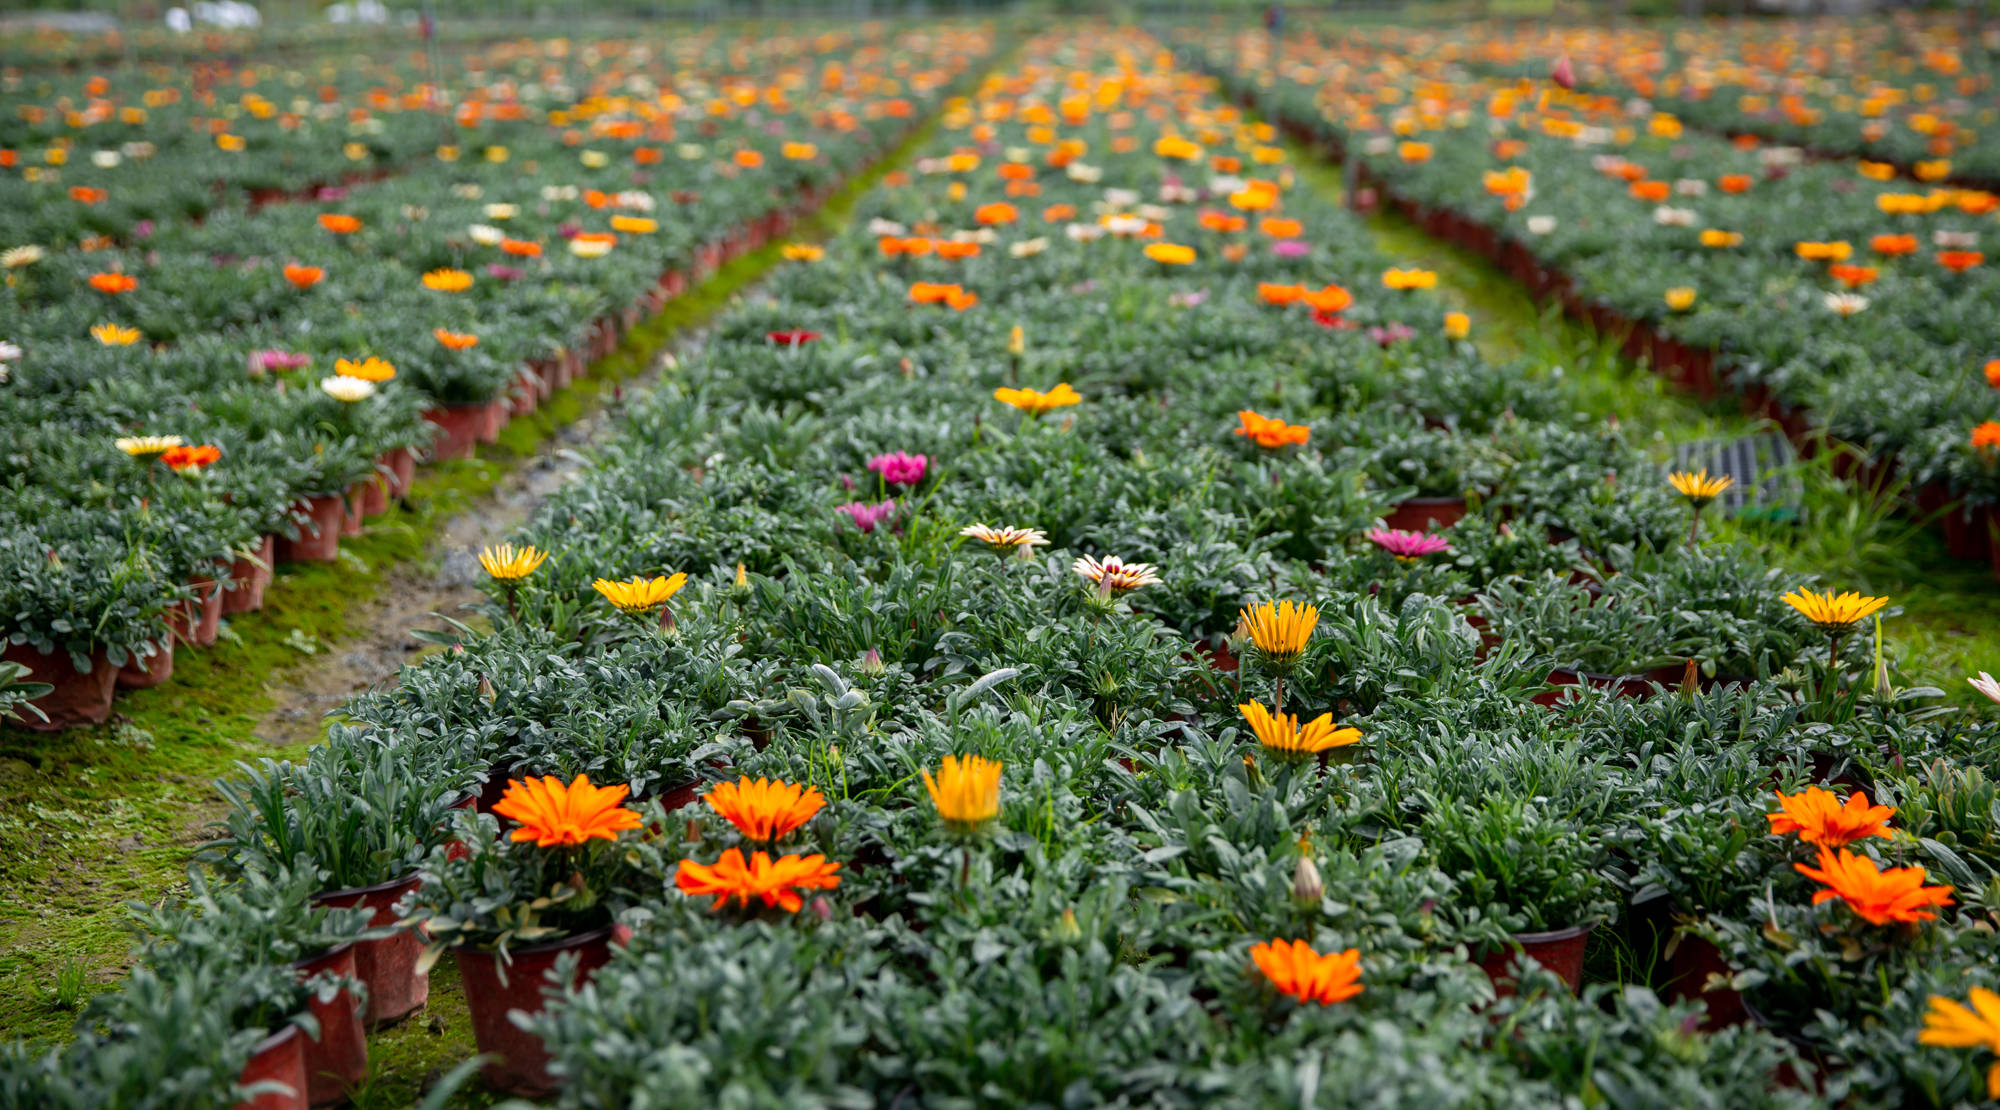 原创彭州丽春镇大力发展花卉种植产业抢占花镜市场